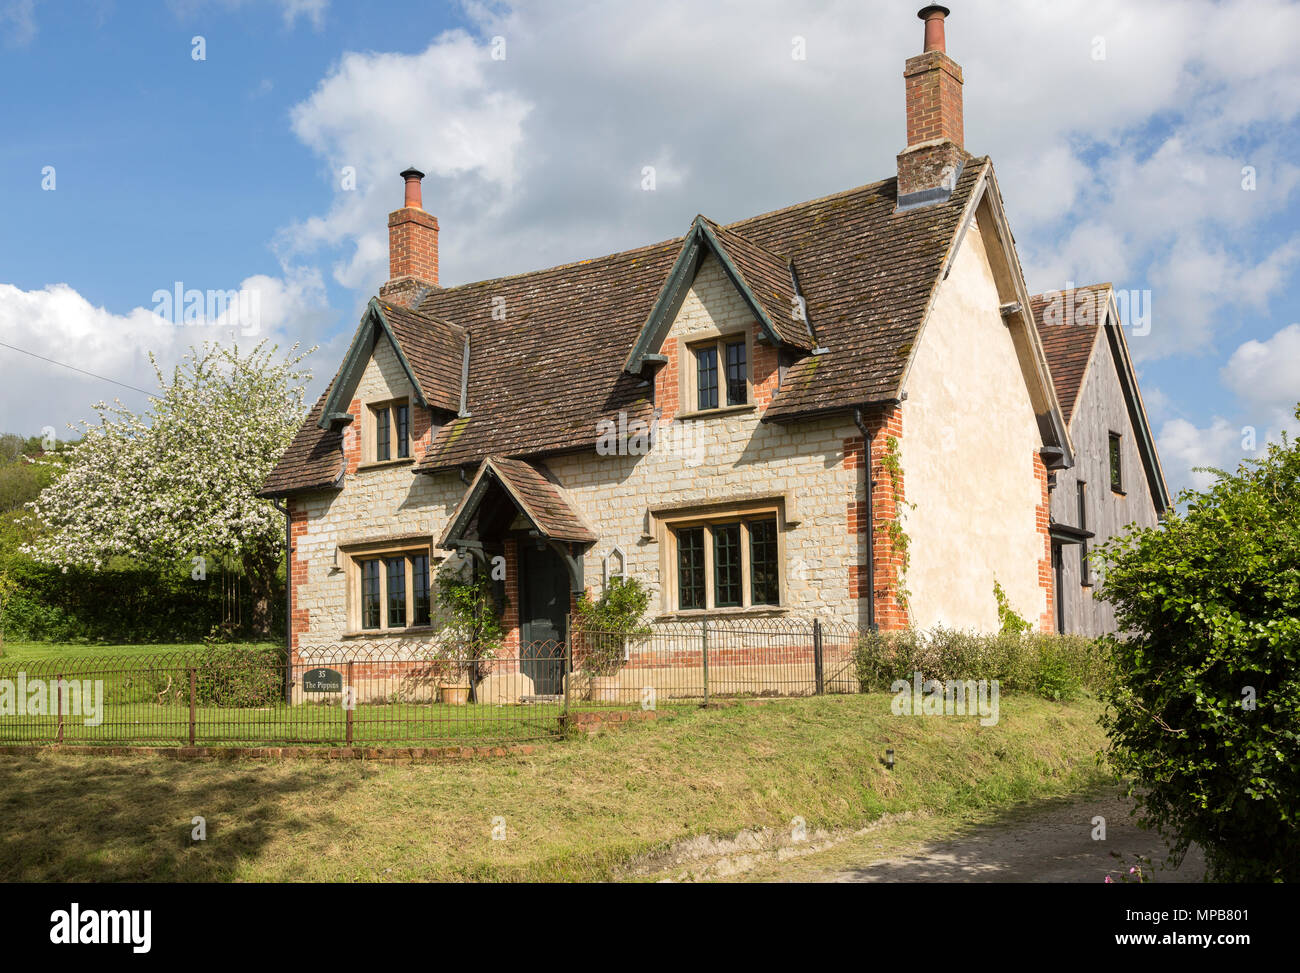 Sympathique maison construite en pierre de craie dans le village de Compton Bassett, Wiltshire, England, UK Banque D'Images